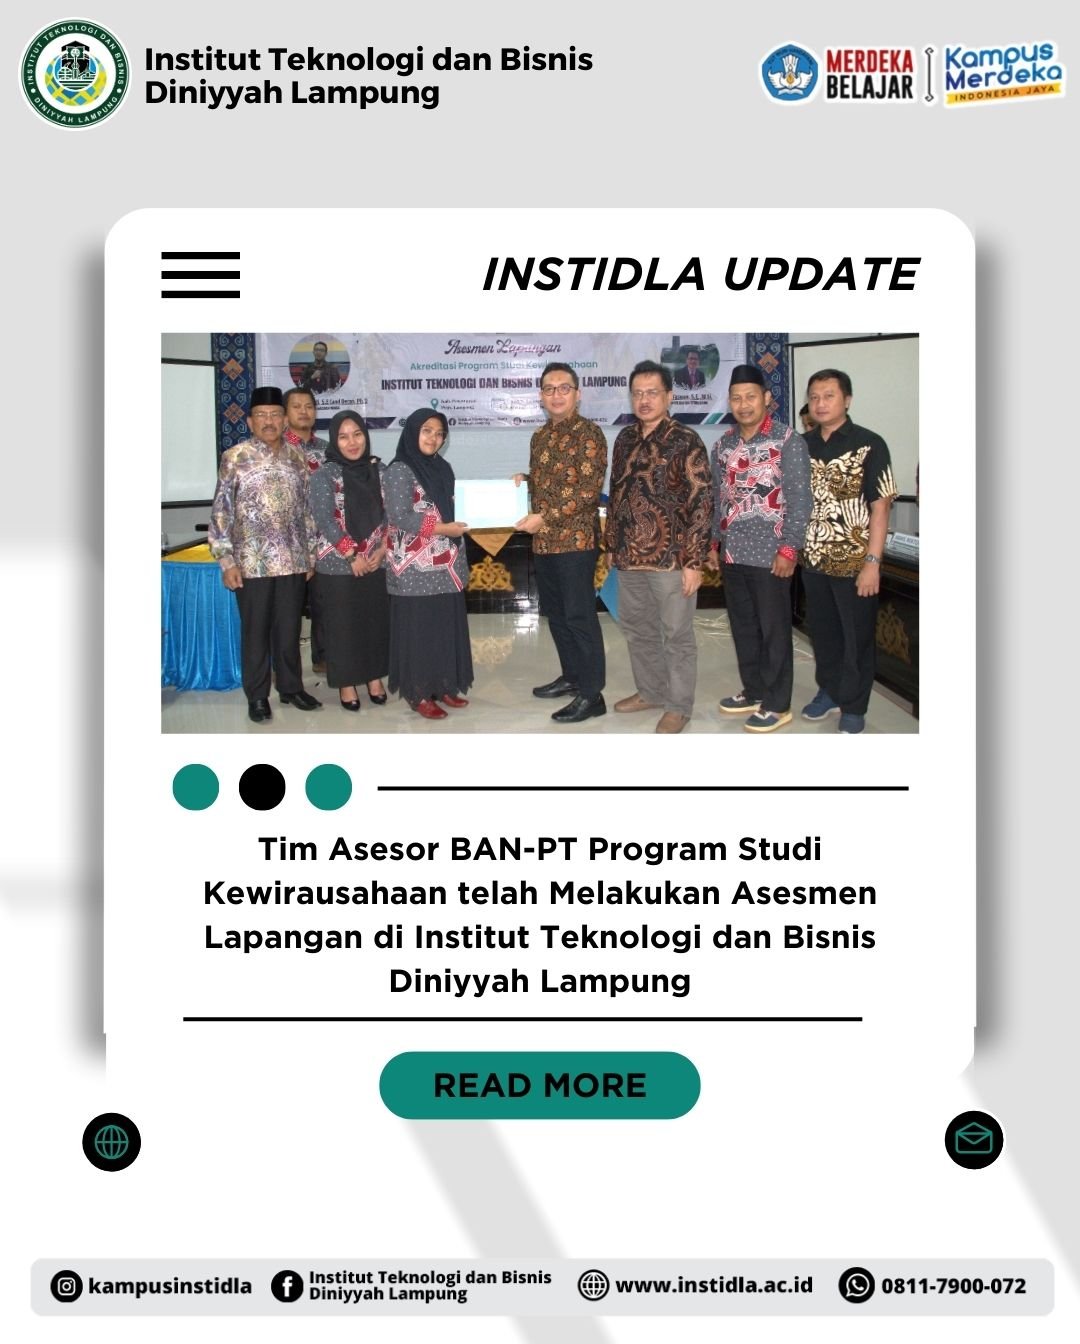 Tim Asesor BAN-PT Program Studi Kewirausahaan telah Melakukan Asesmen Lapangan di Institut Teknologi dan Bisnis Diniyyah Lampung